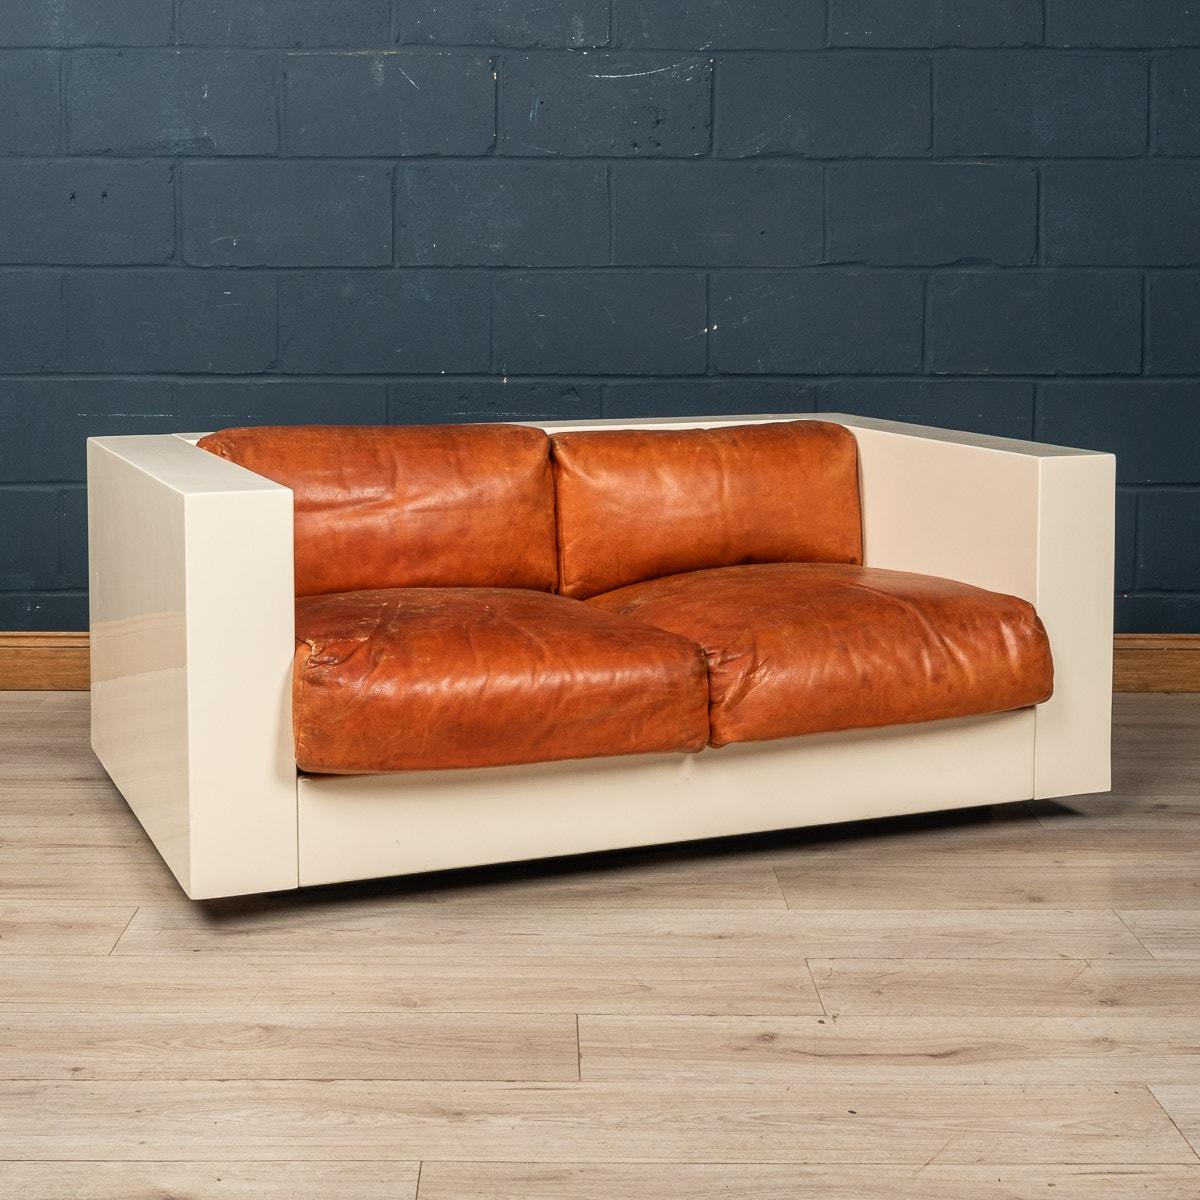 Un joli canapé deux places conçu par le couple de designers italiens Lella et Massimo Vignelli. Fabriqué par la société Poltronova de Florence, ce canapé est un classique du design avec une merveilleuse combinaison de blanc cassé et de rouge pour la